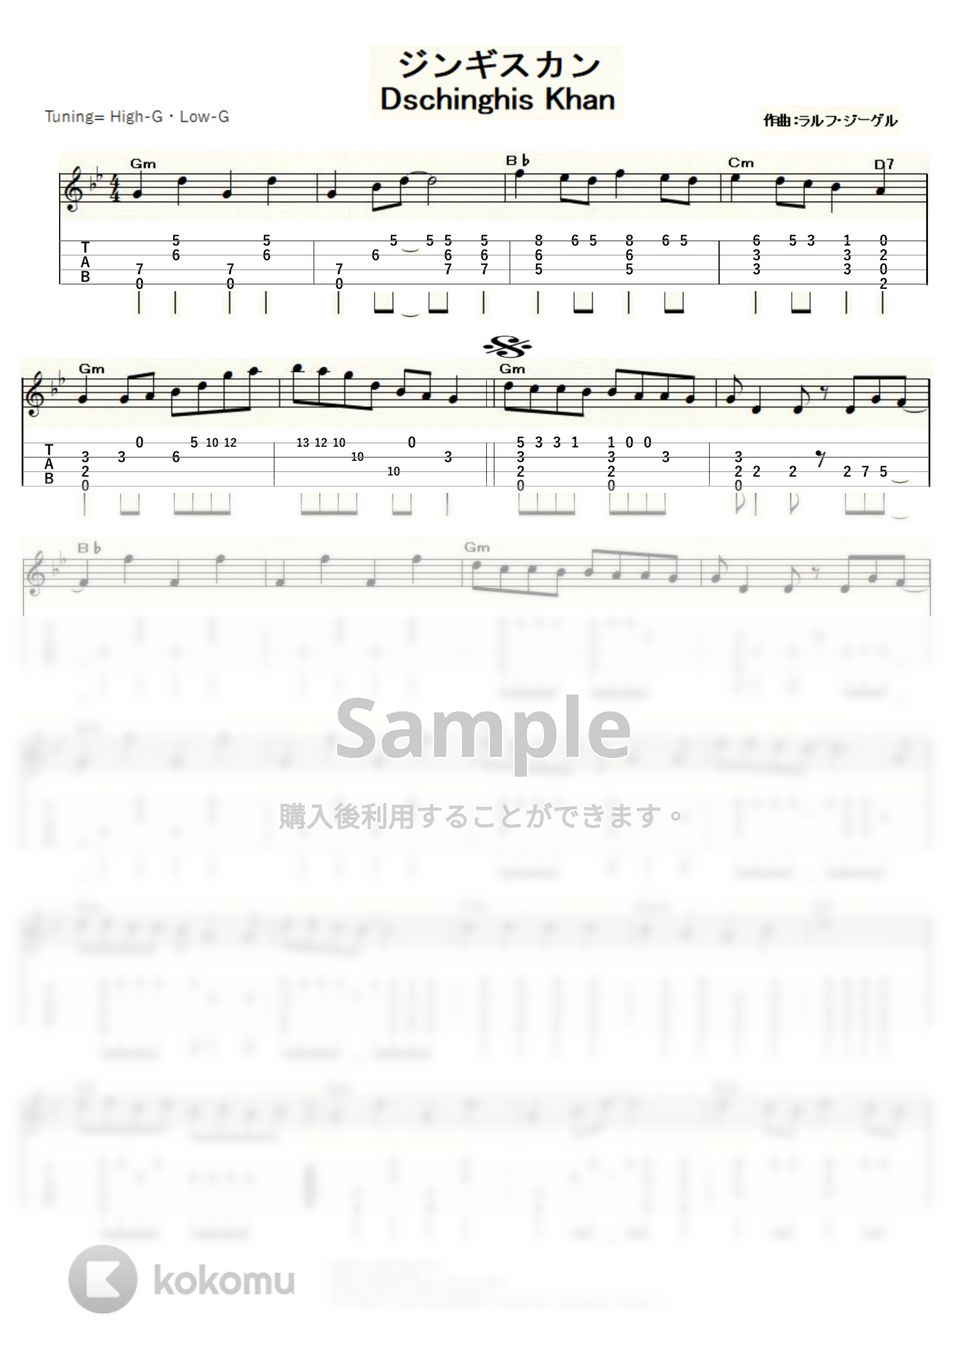 ジンギスカン - ジンギスカン (ｳｸﾚﾚｿﾛ / High-G,Low-G / 中級) by ukulelepapa